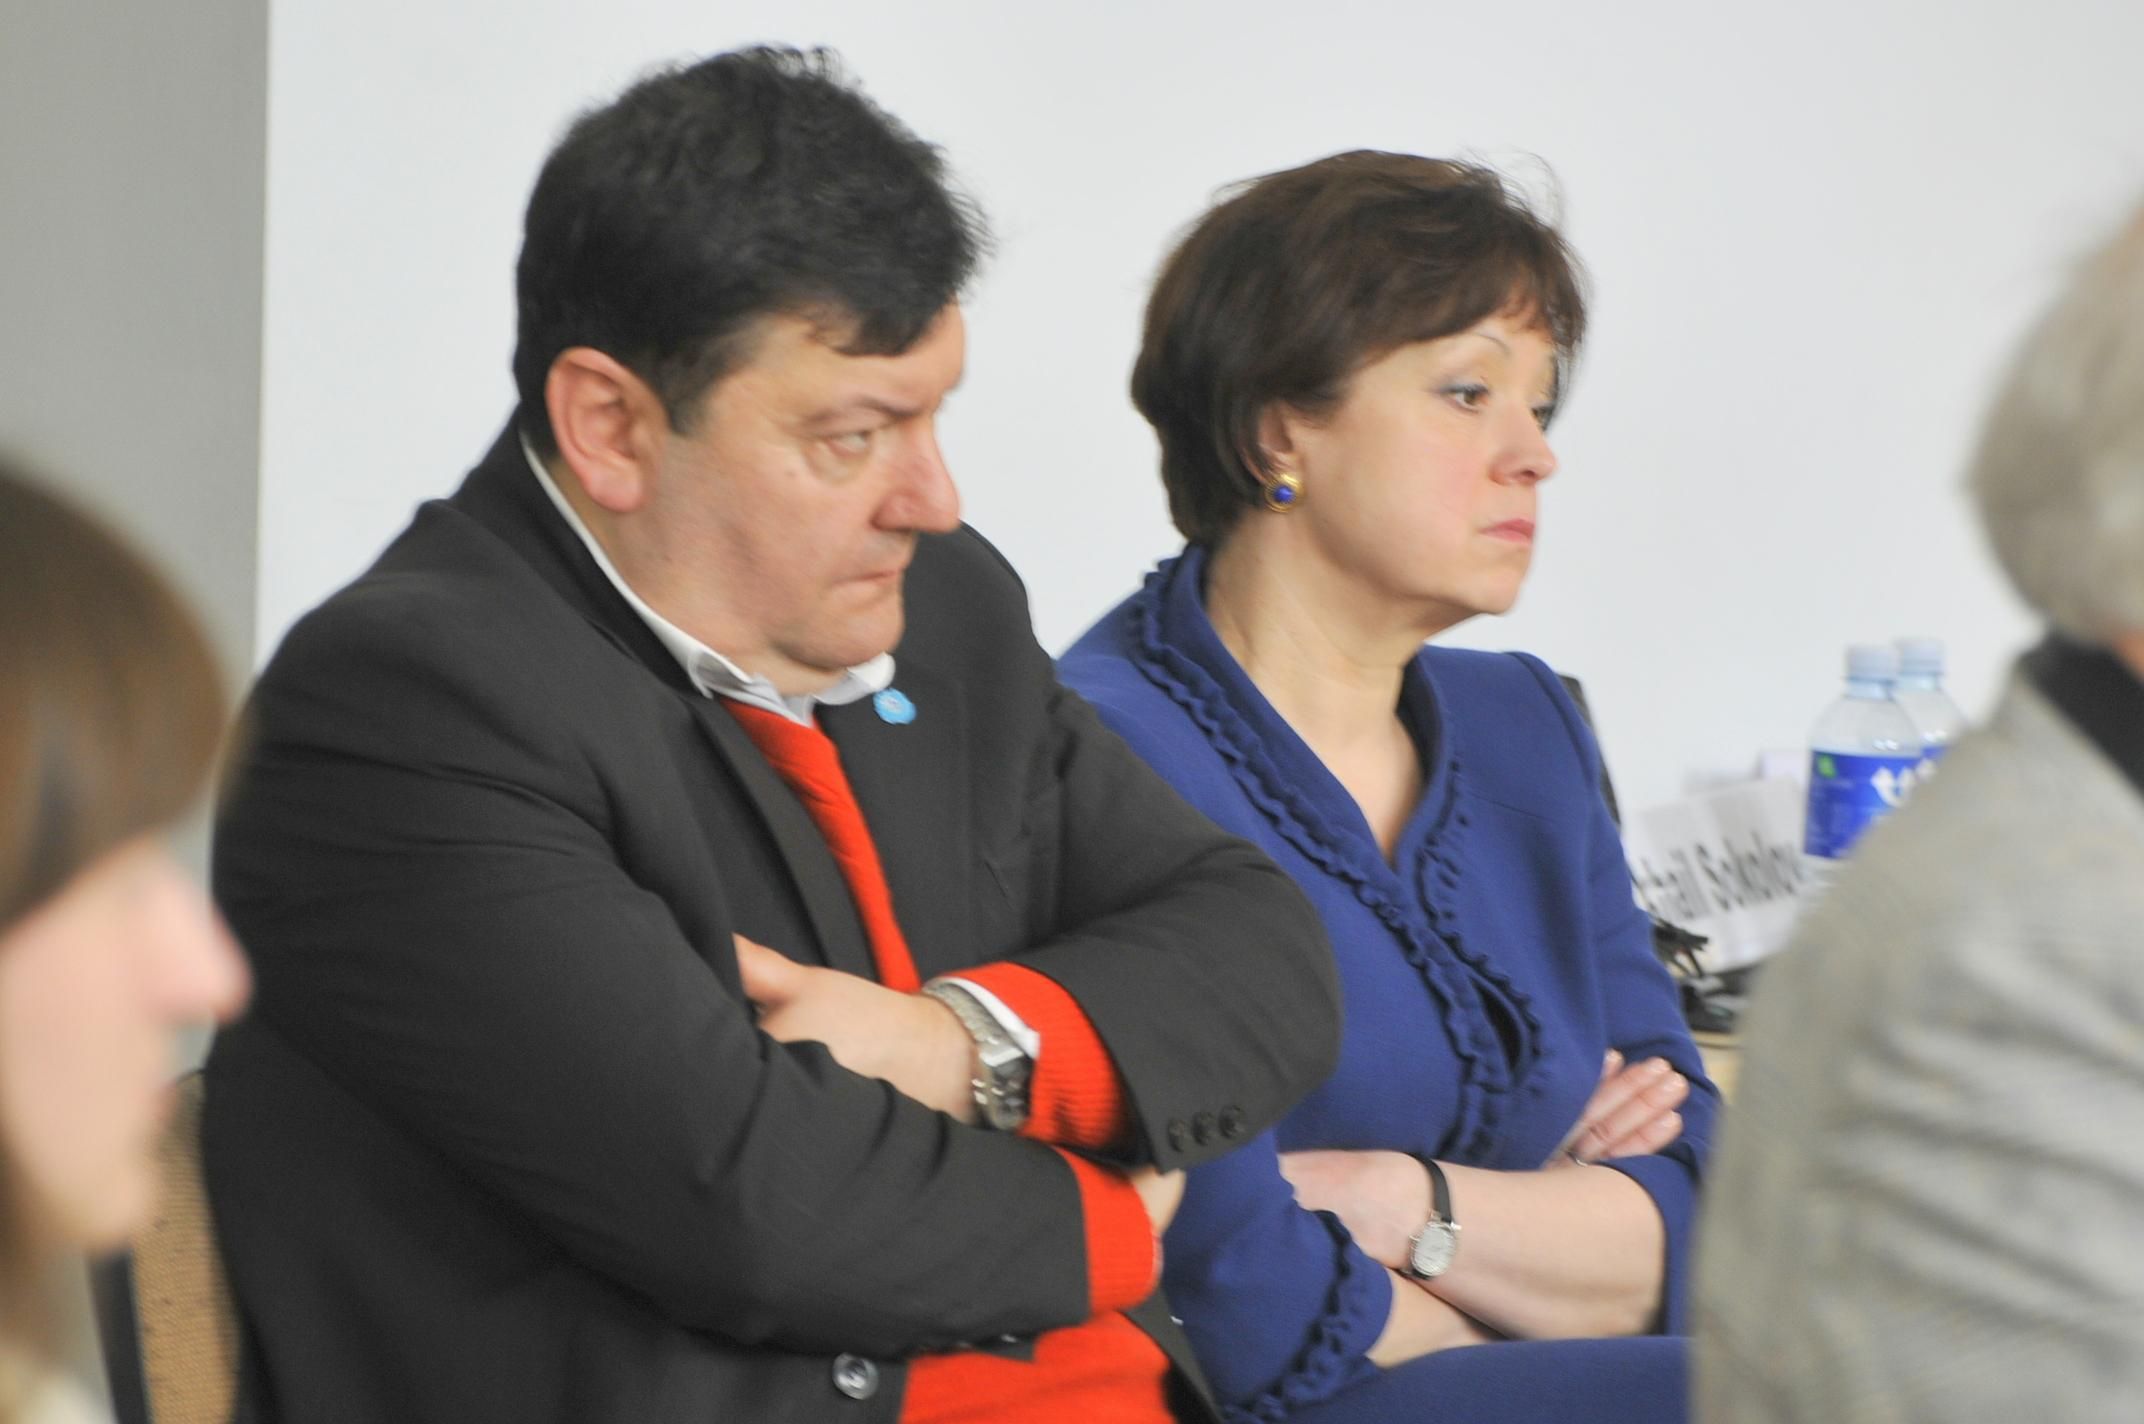 Эмануэлис Зингерис и Вилия Алекнайте-Абрамикене за время своей политической карьеры многое сказали о России. Фото Владимира Клоповского, "Обзор"